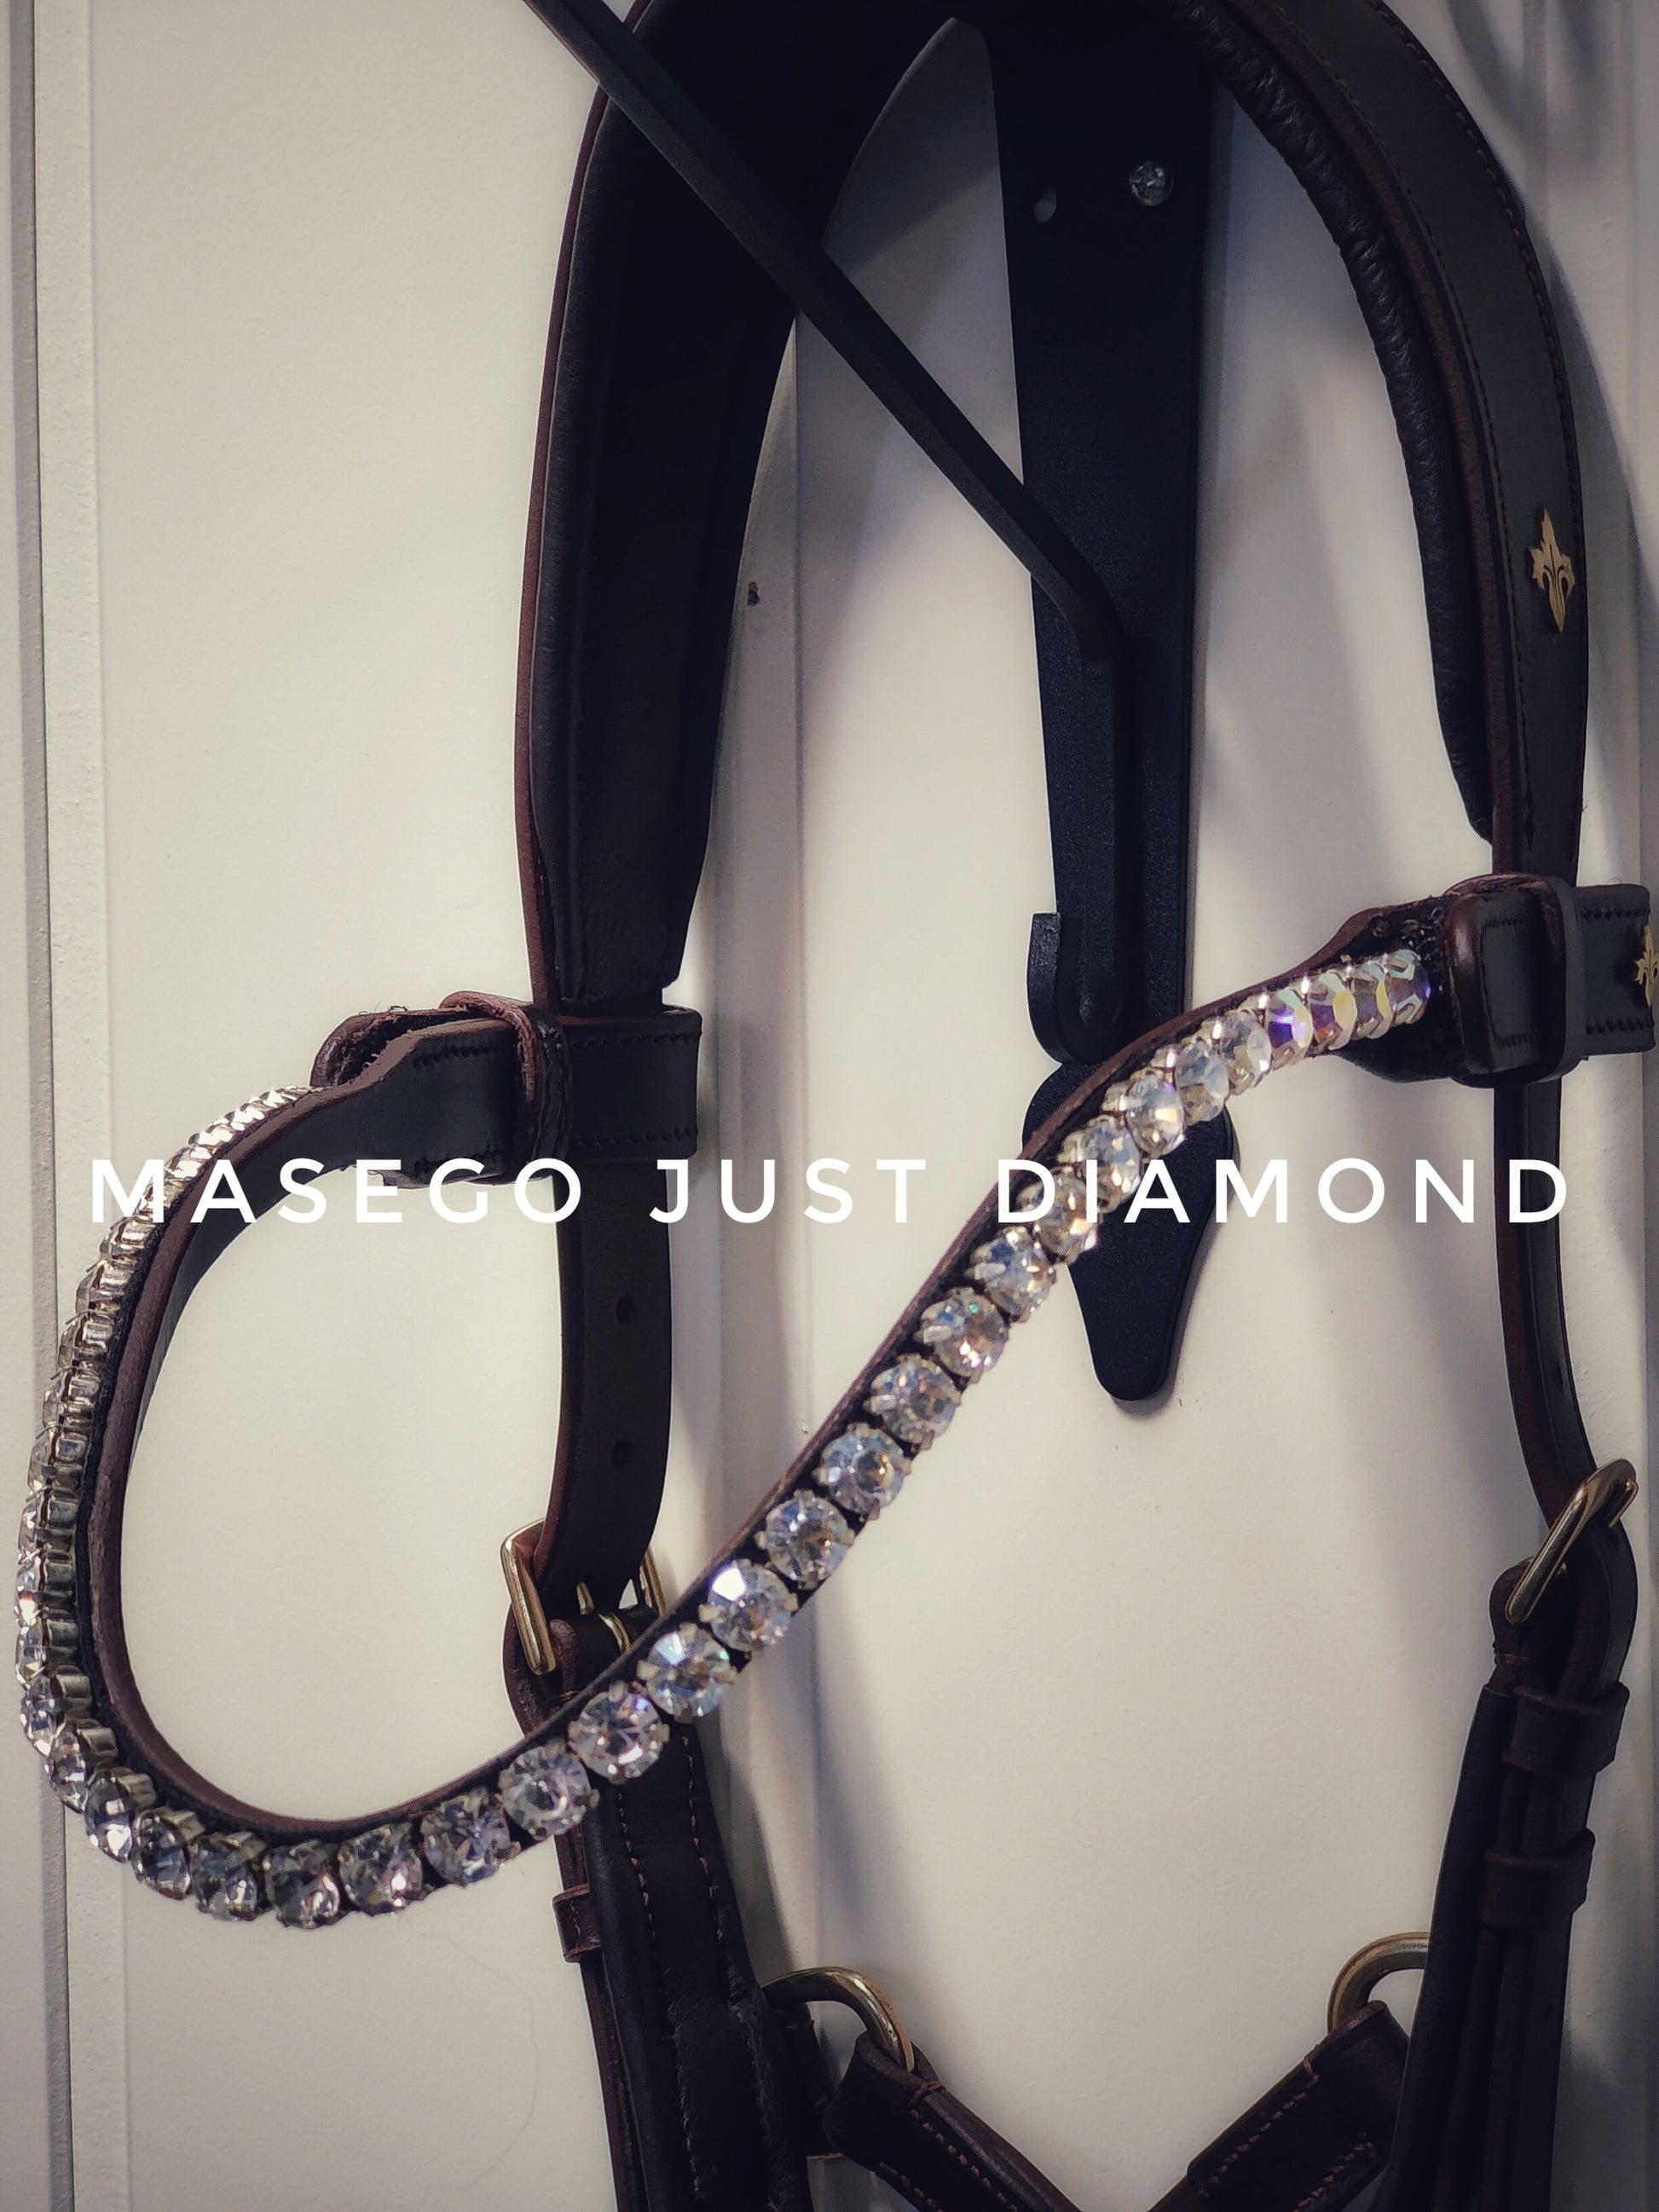 Masego Just diamond - MASEGO horsewear